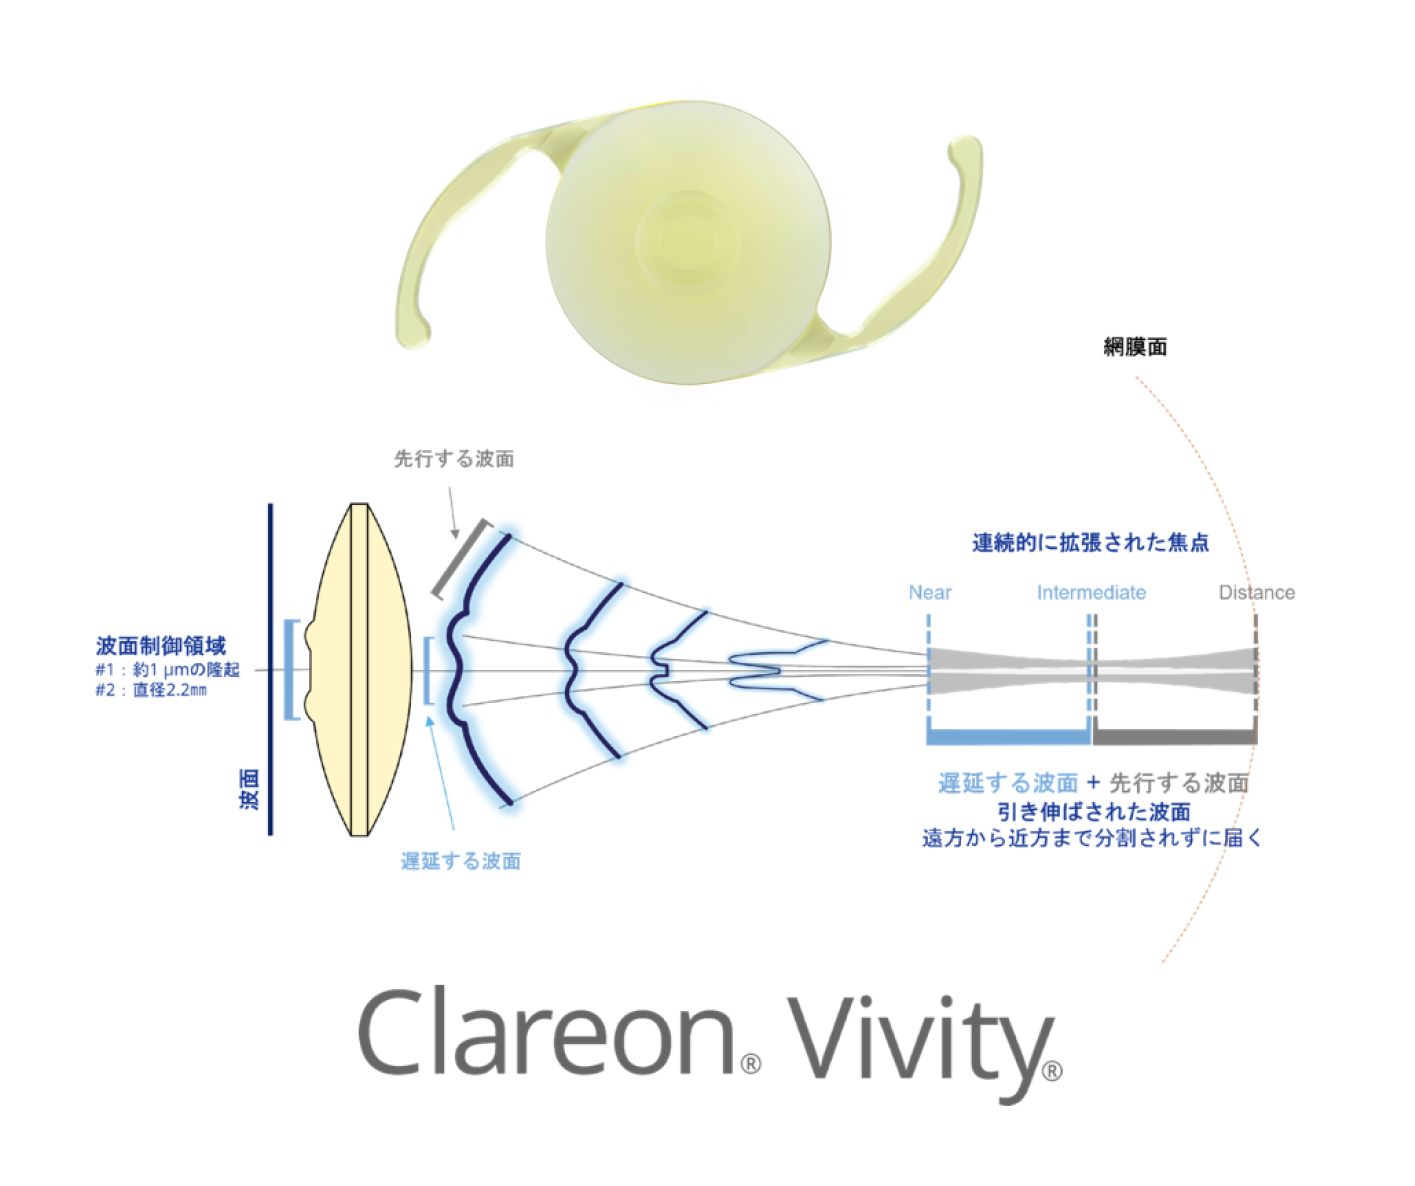 Clareon Vivity